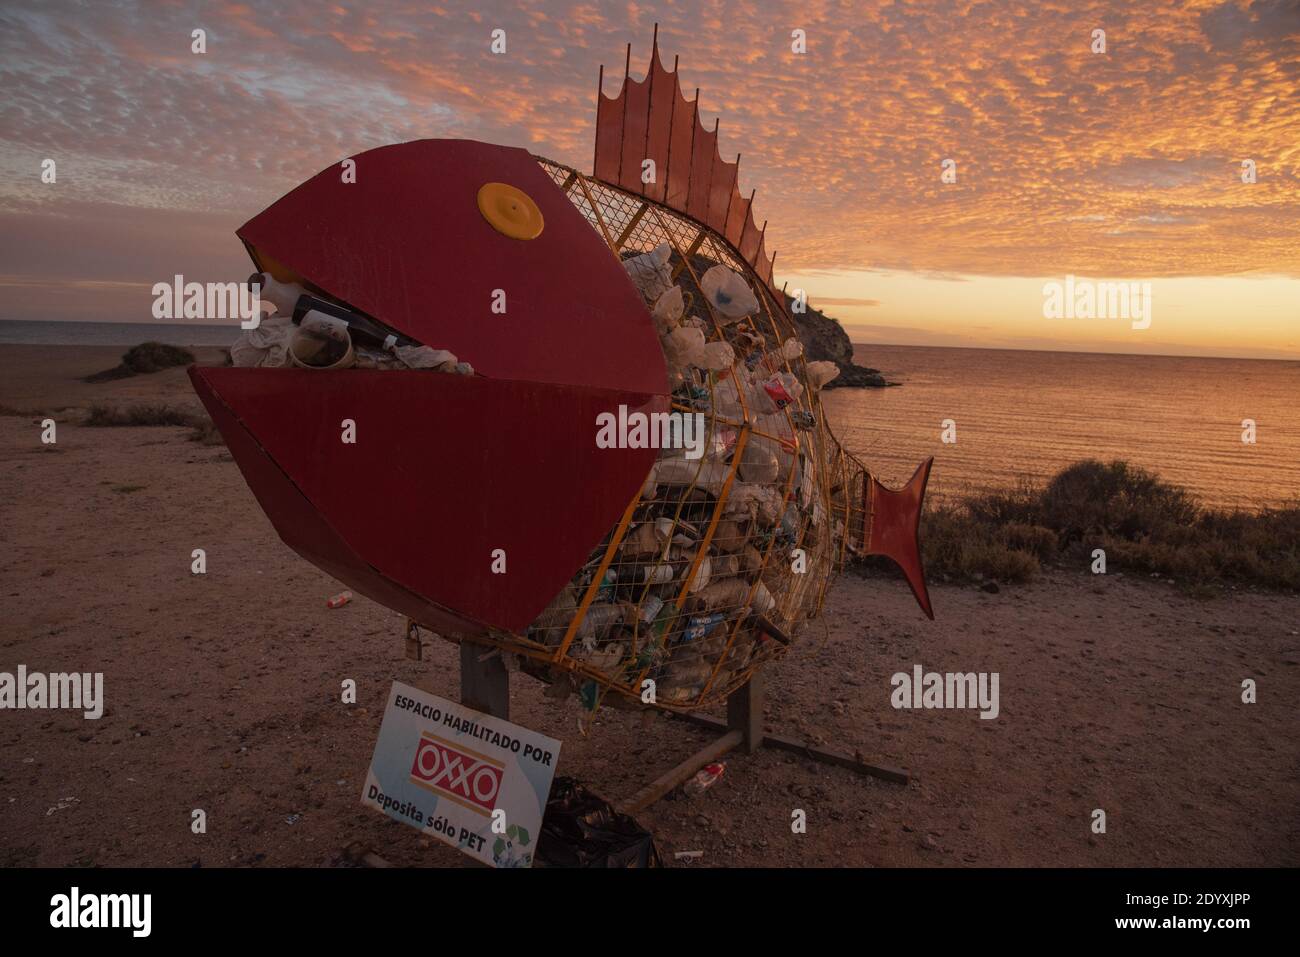 Sur la plage, une grande poubelle en forme de poisson est pleine de déchets Banque D'Images